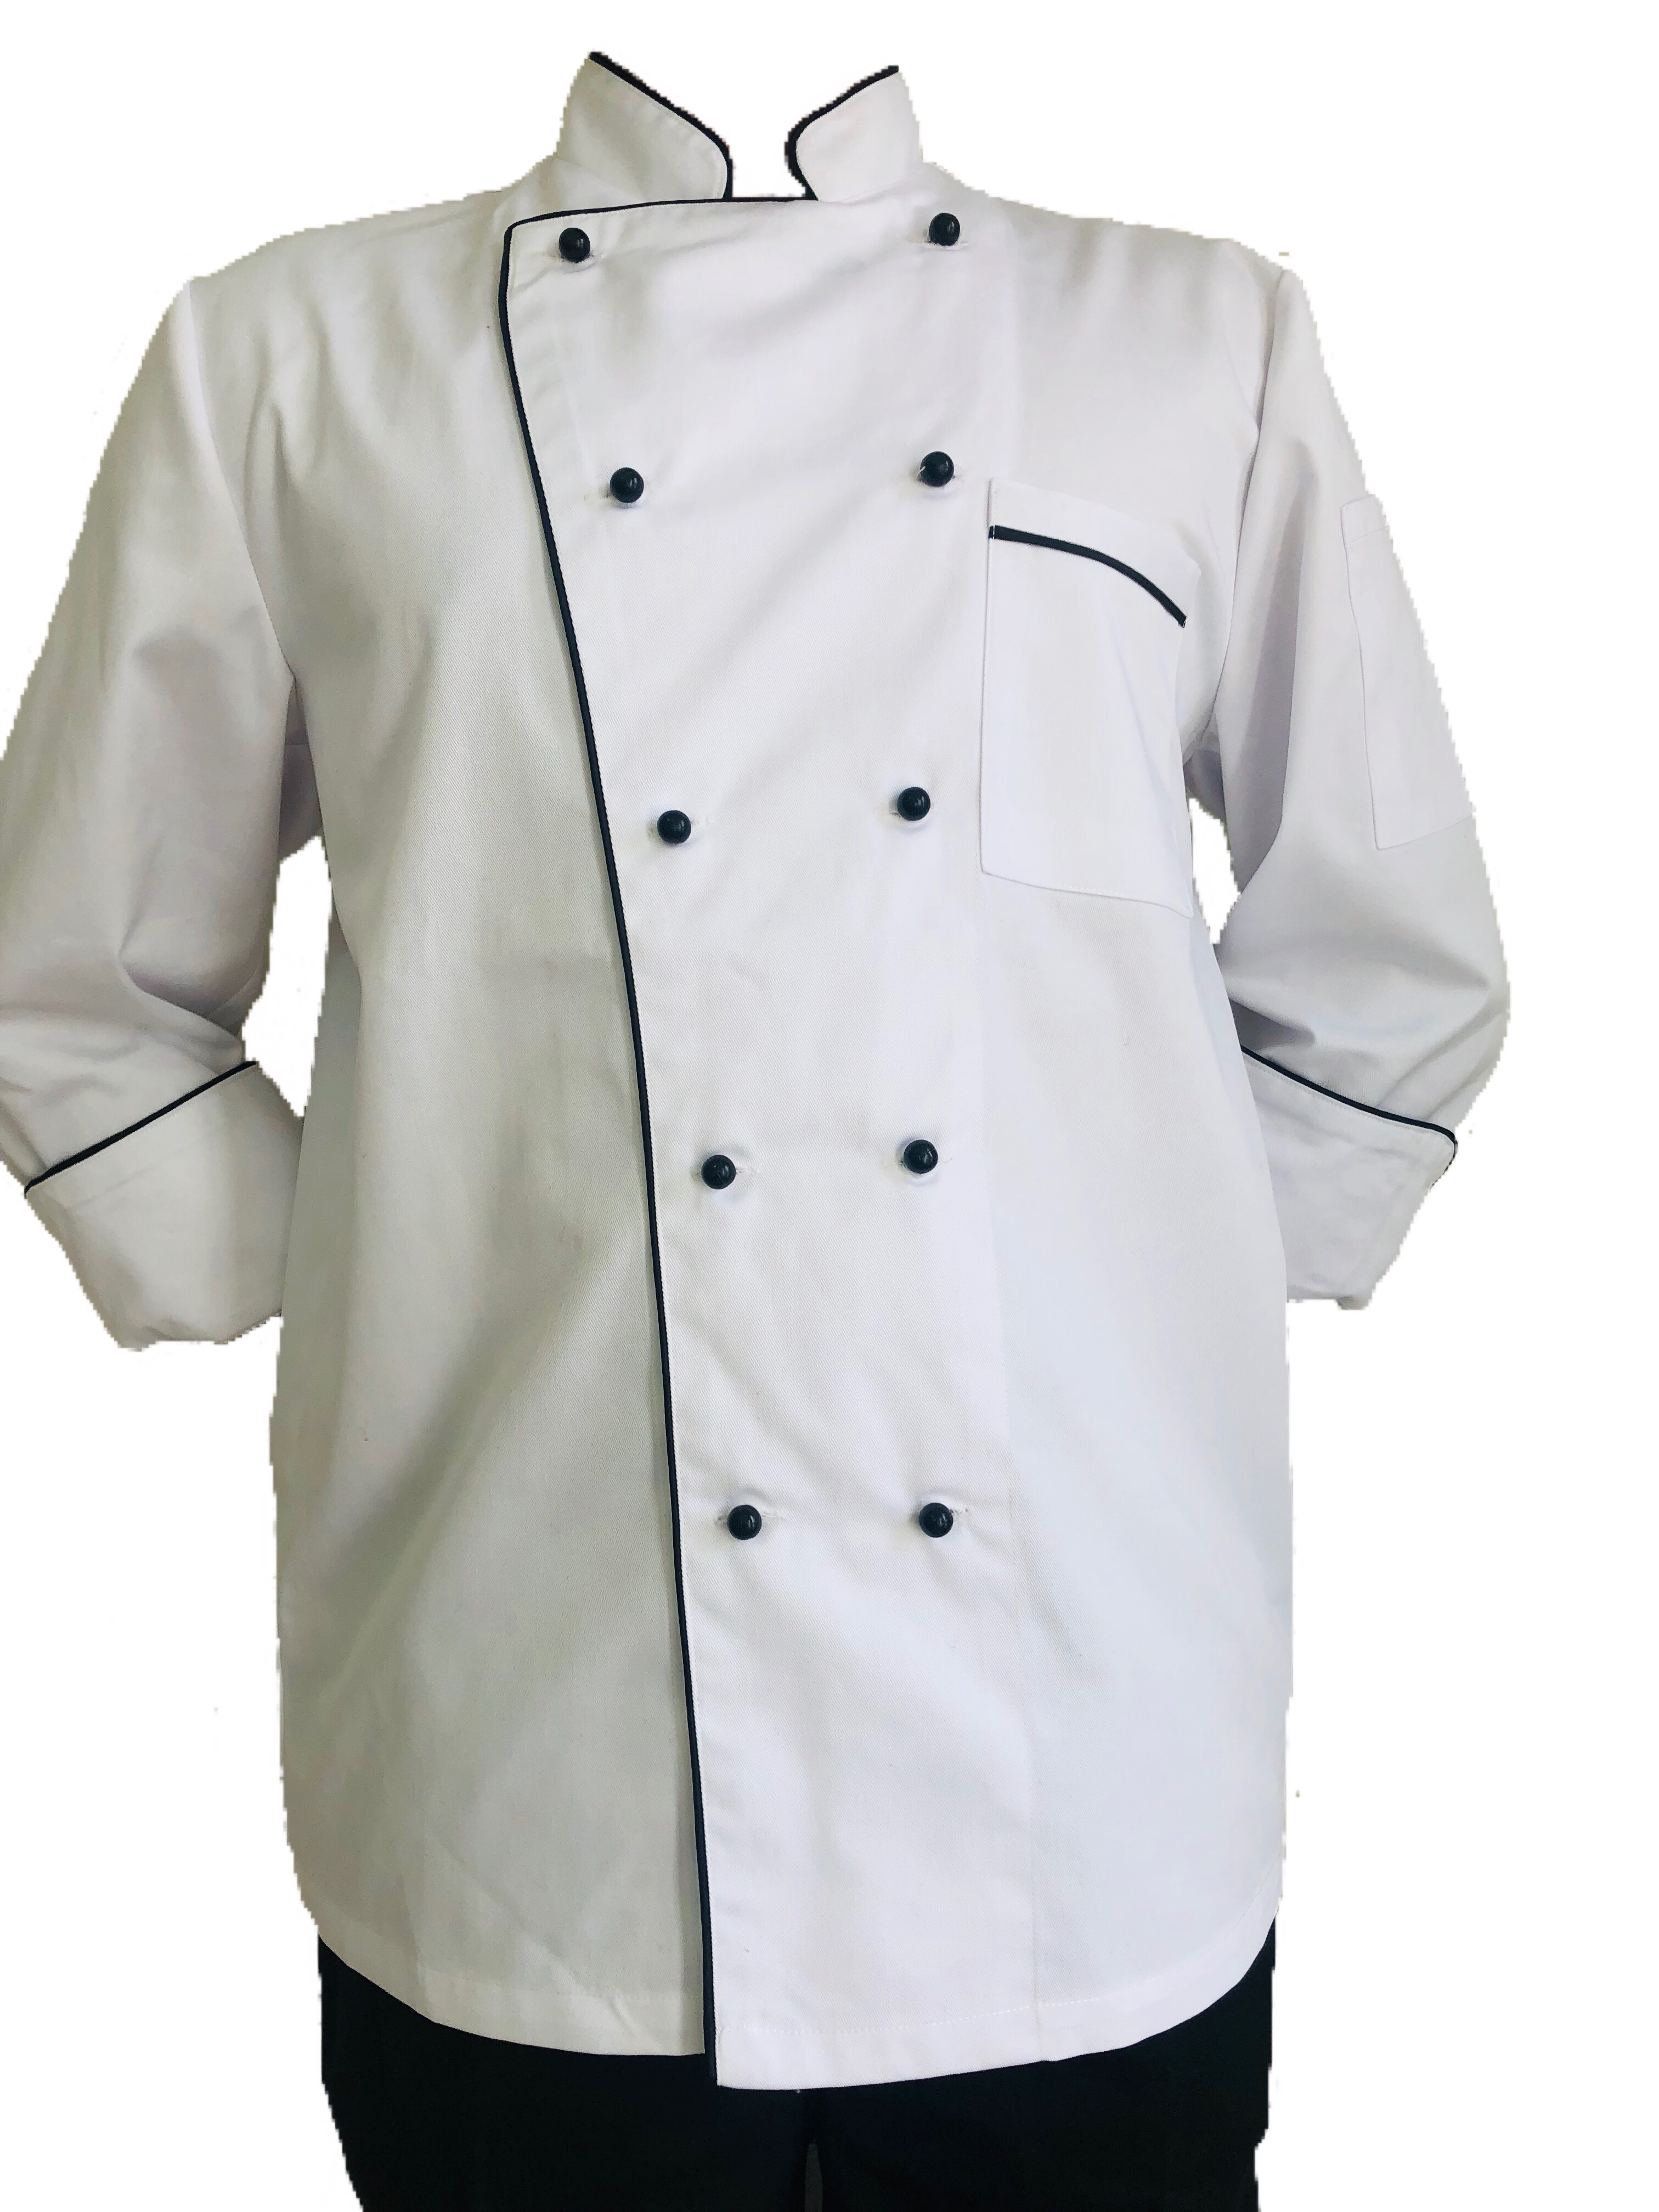 Chef Jackets Classic White - Unisex Chef Uniforms Australia